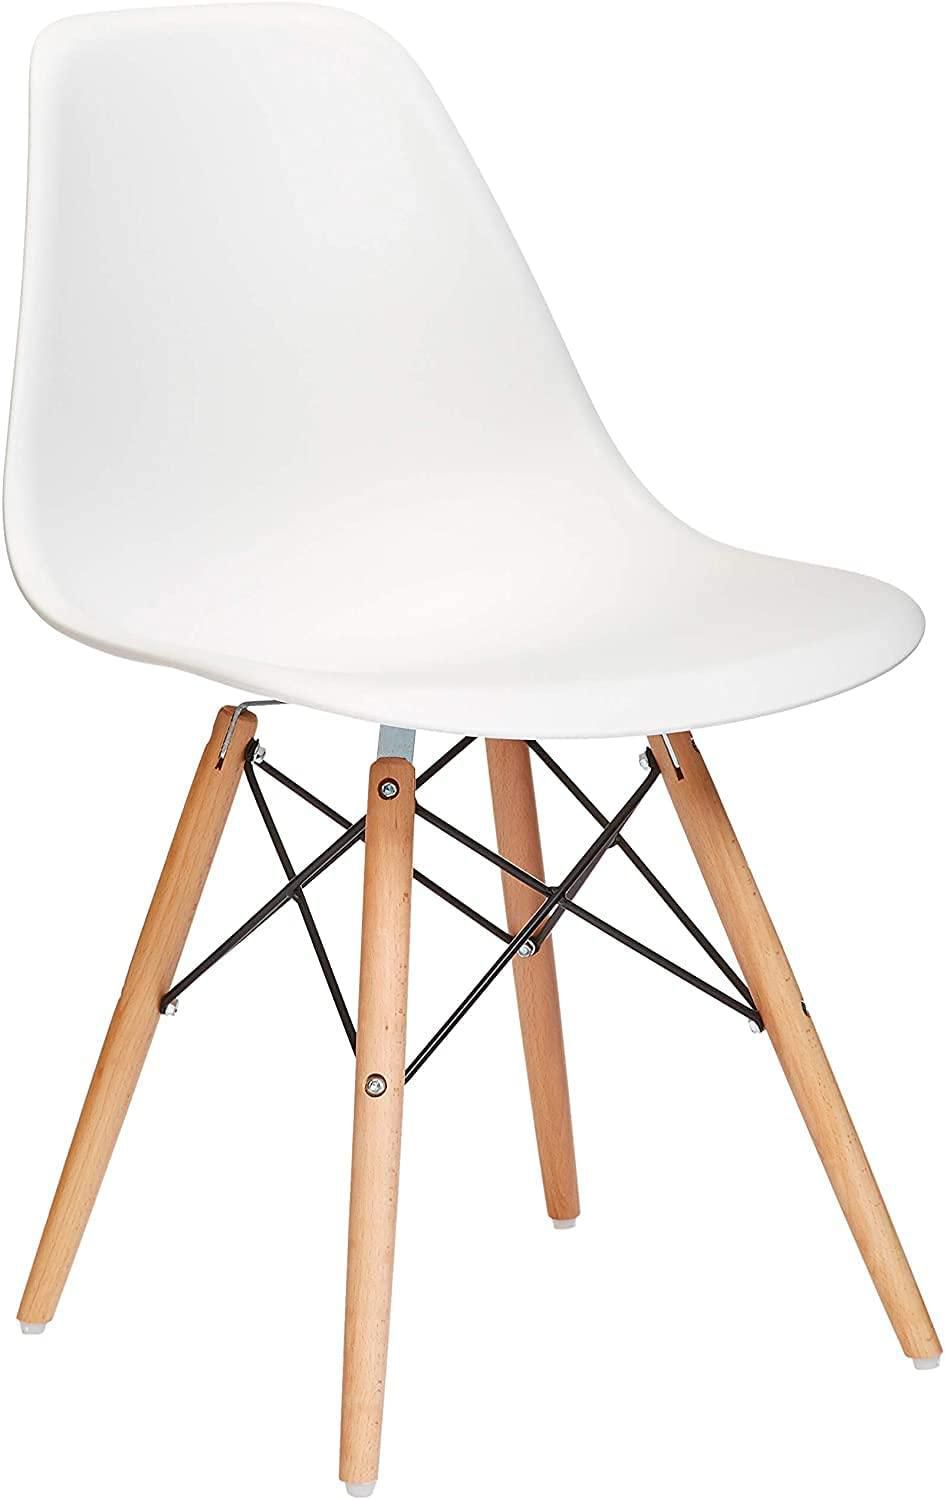  كرسي بلاستيك مع ارجل من خشب لغرفة الطعام بتصميم انيق - كرسي استرخاء بدون اذرع ومقعد خشبي بقاعدة من البلاستيك - ابيض